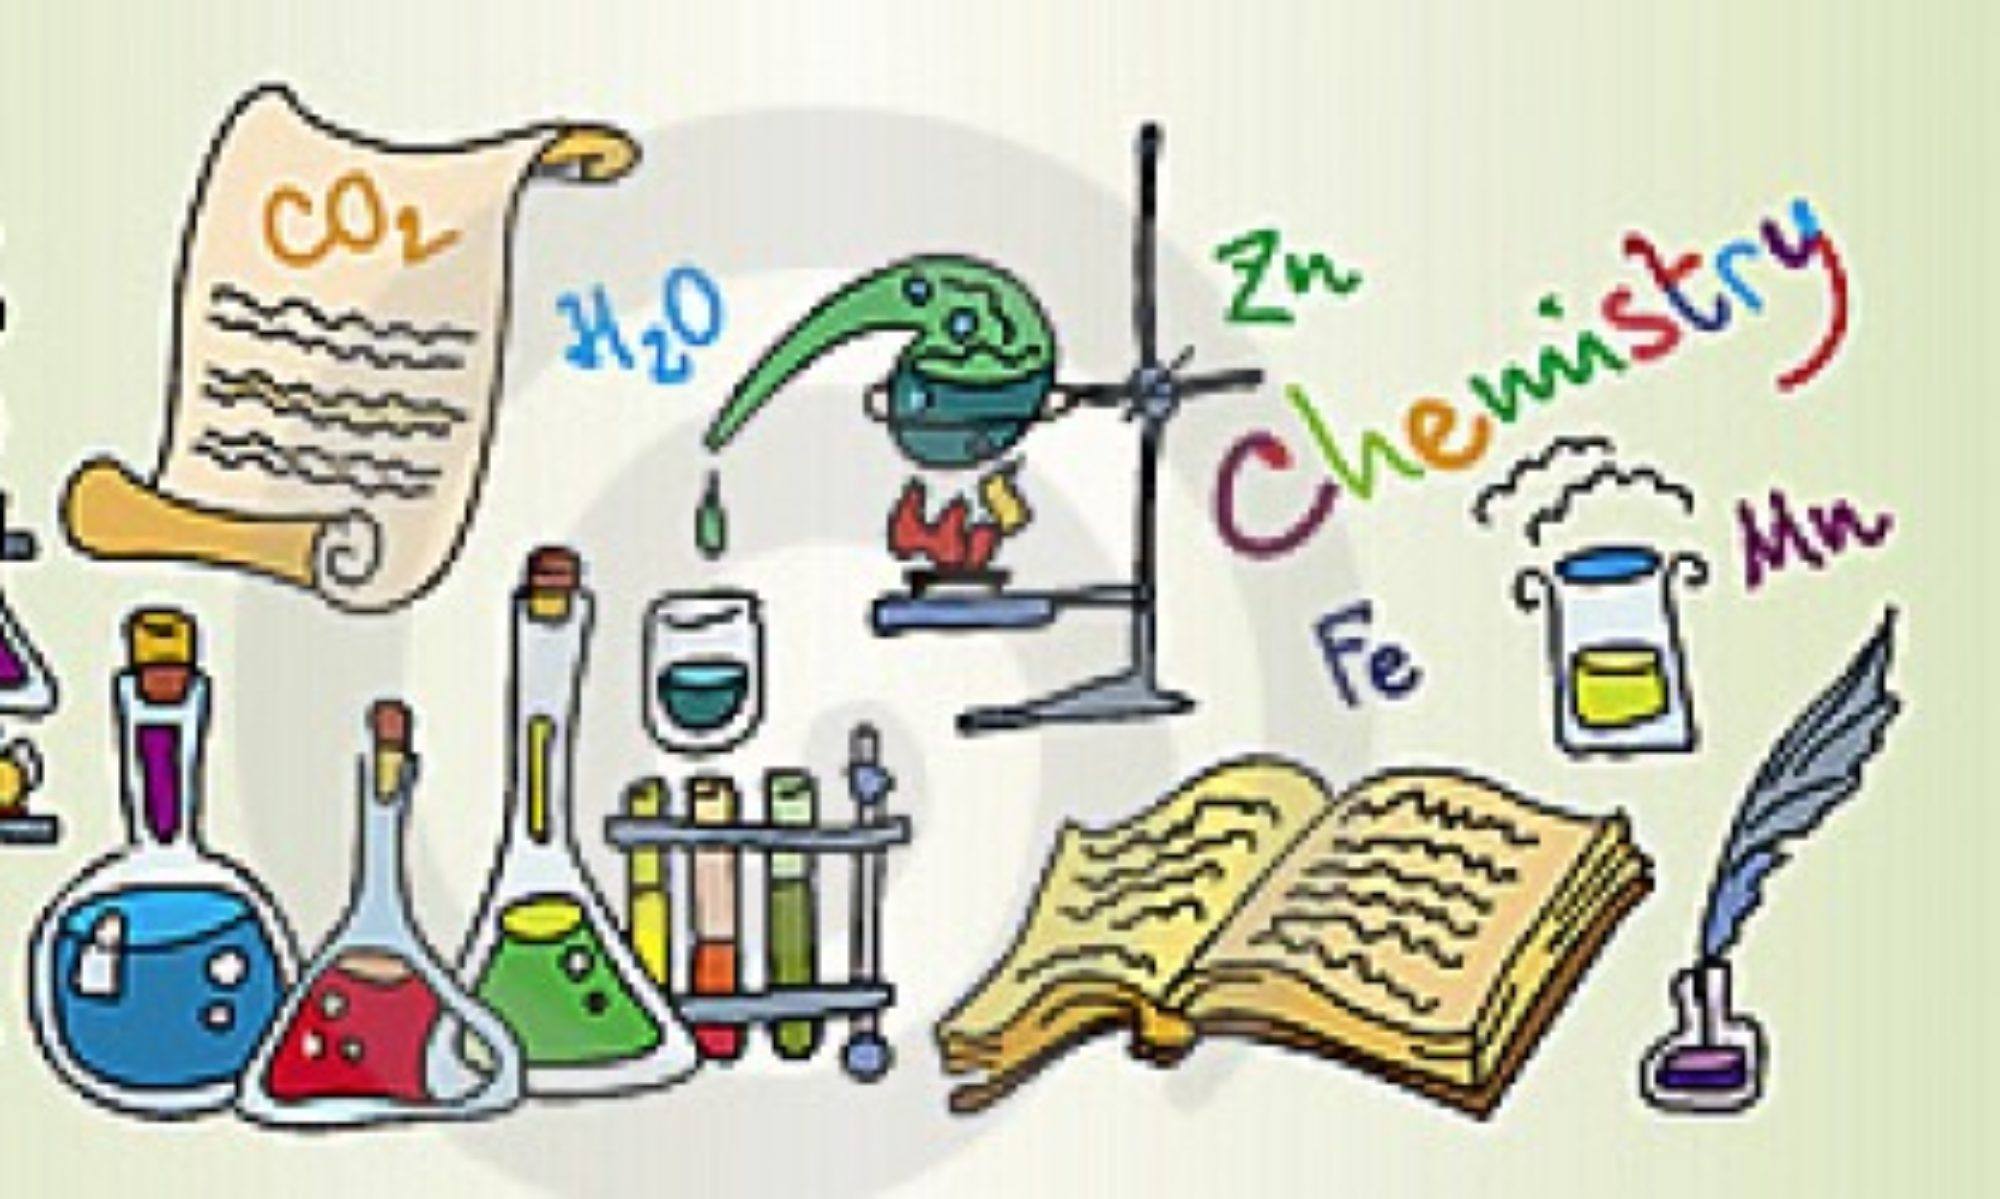 Коэффициенты в уравнениях химических реакций